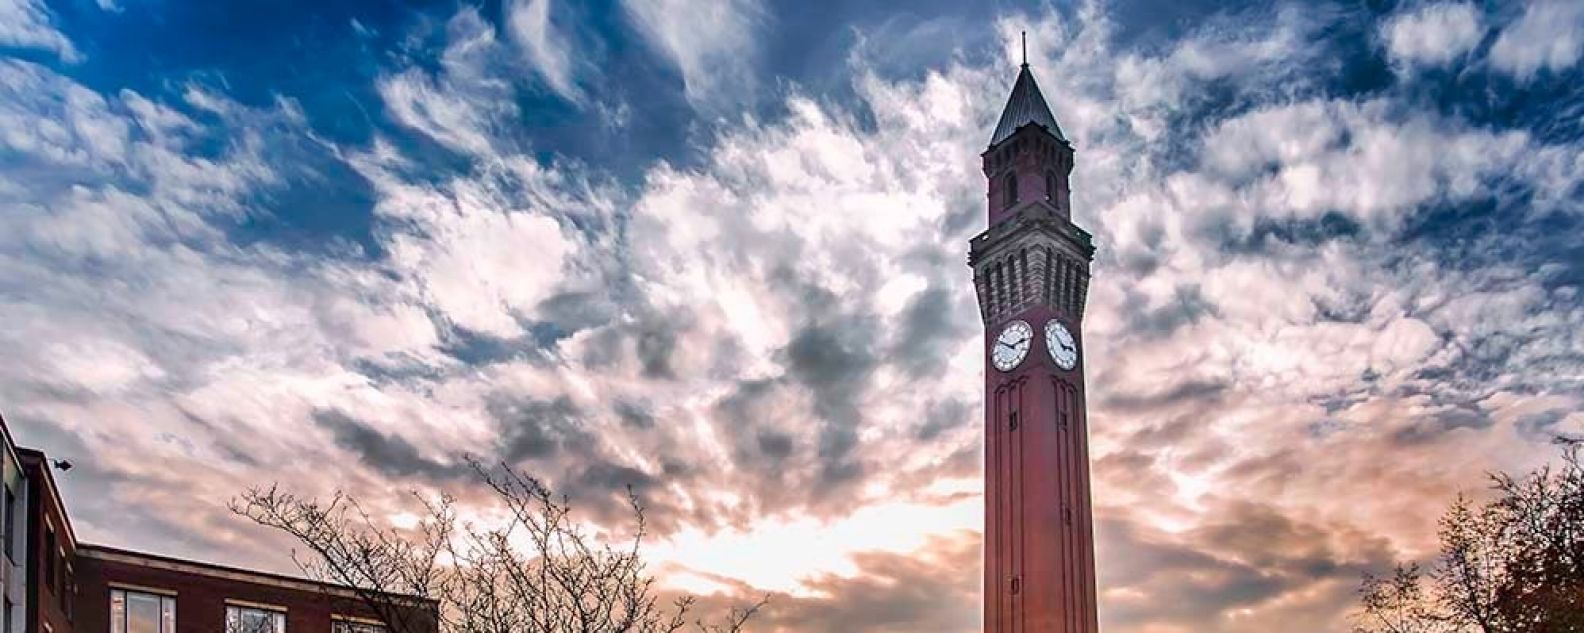 Vista del campus de la Universidad de Birmingham y de la torre del reloj